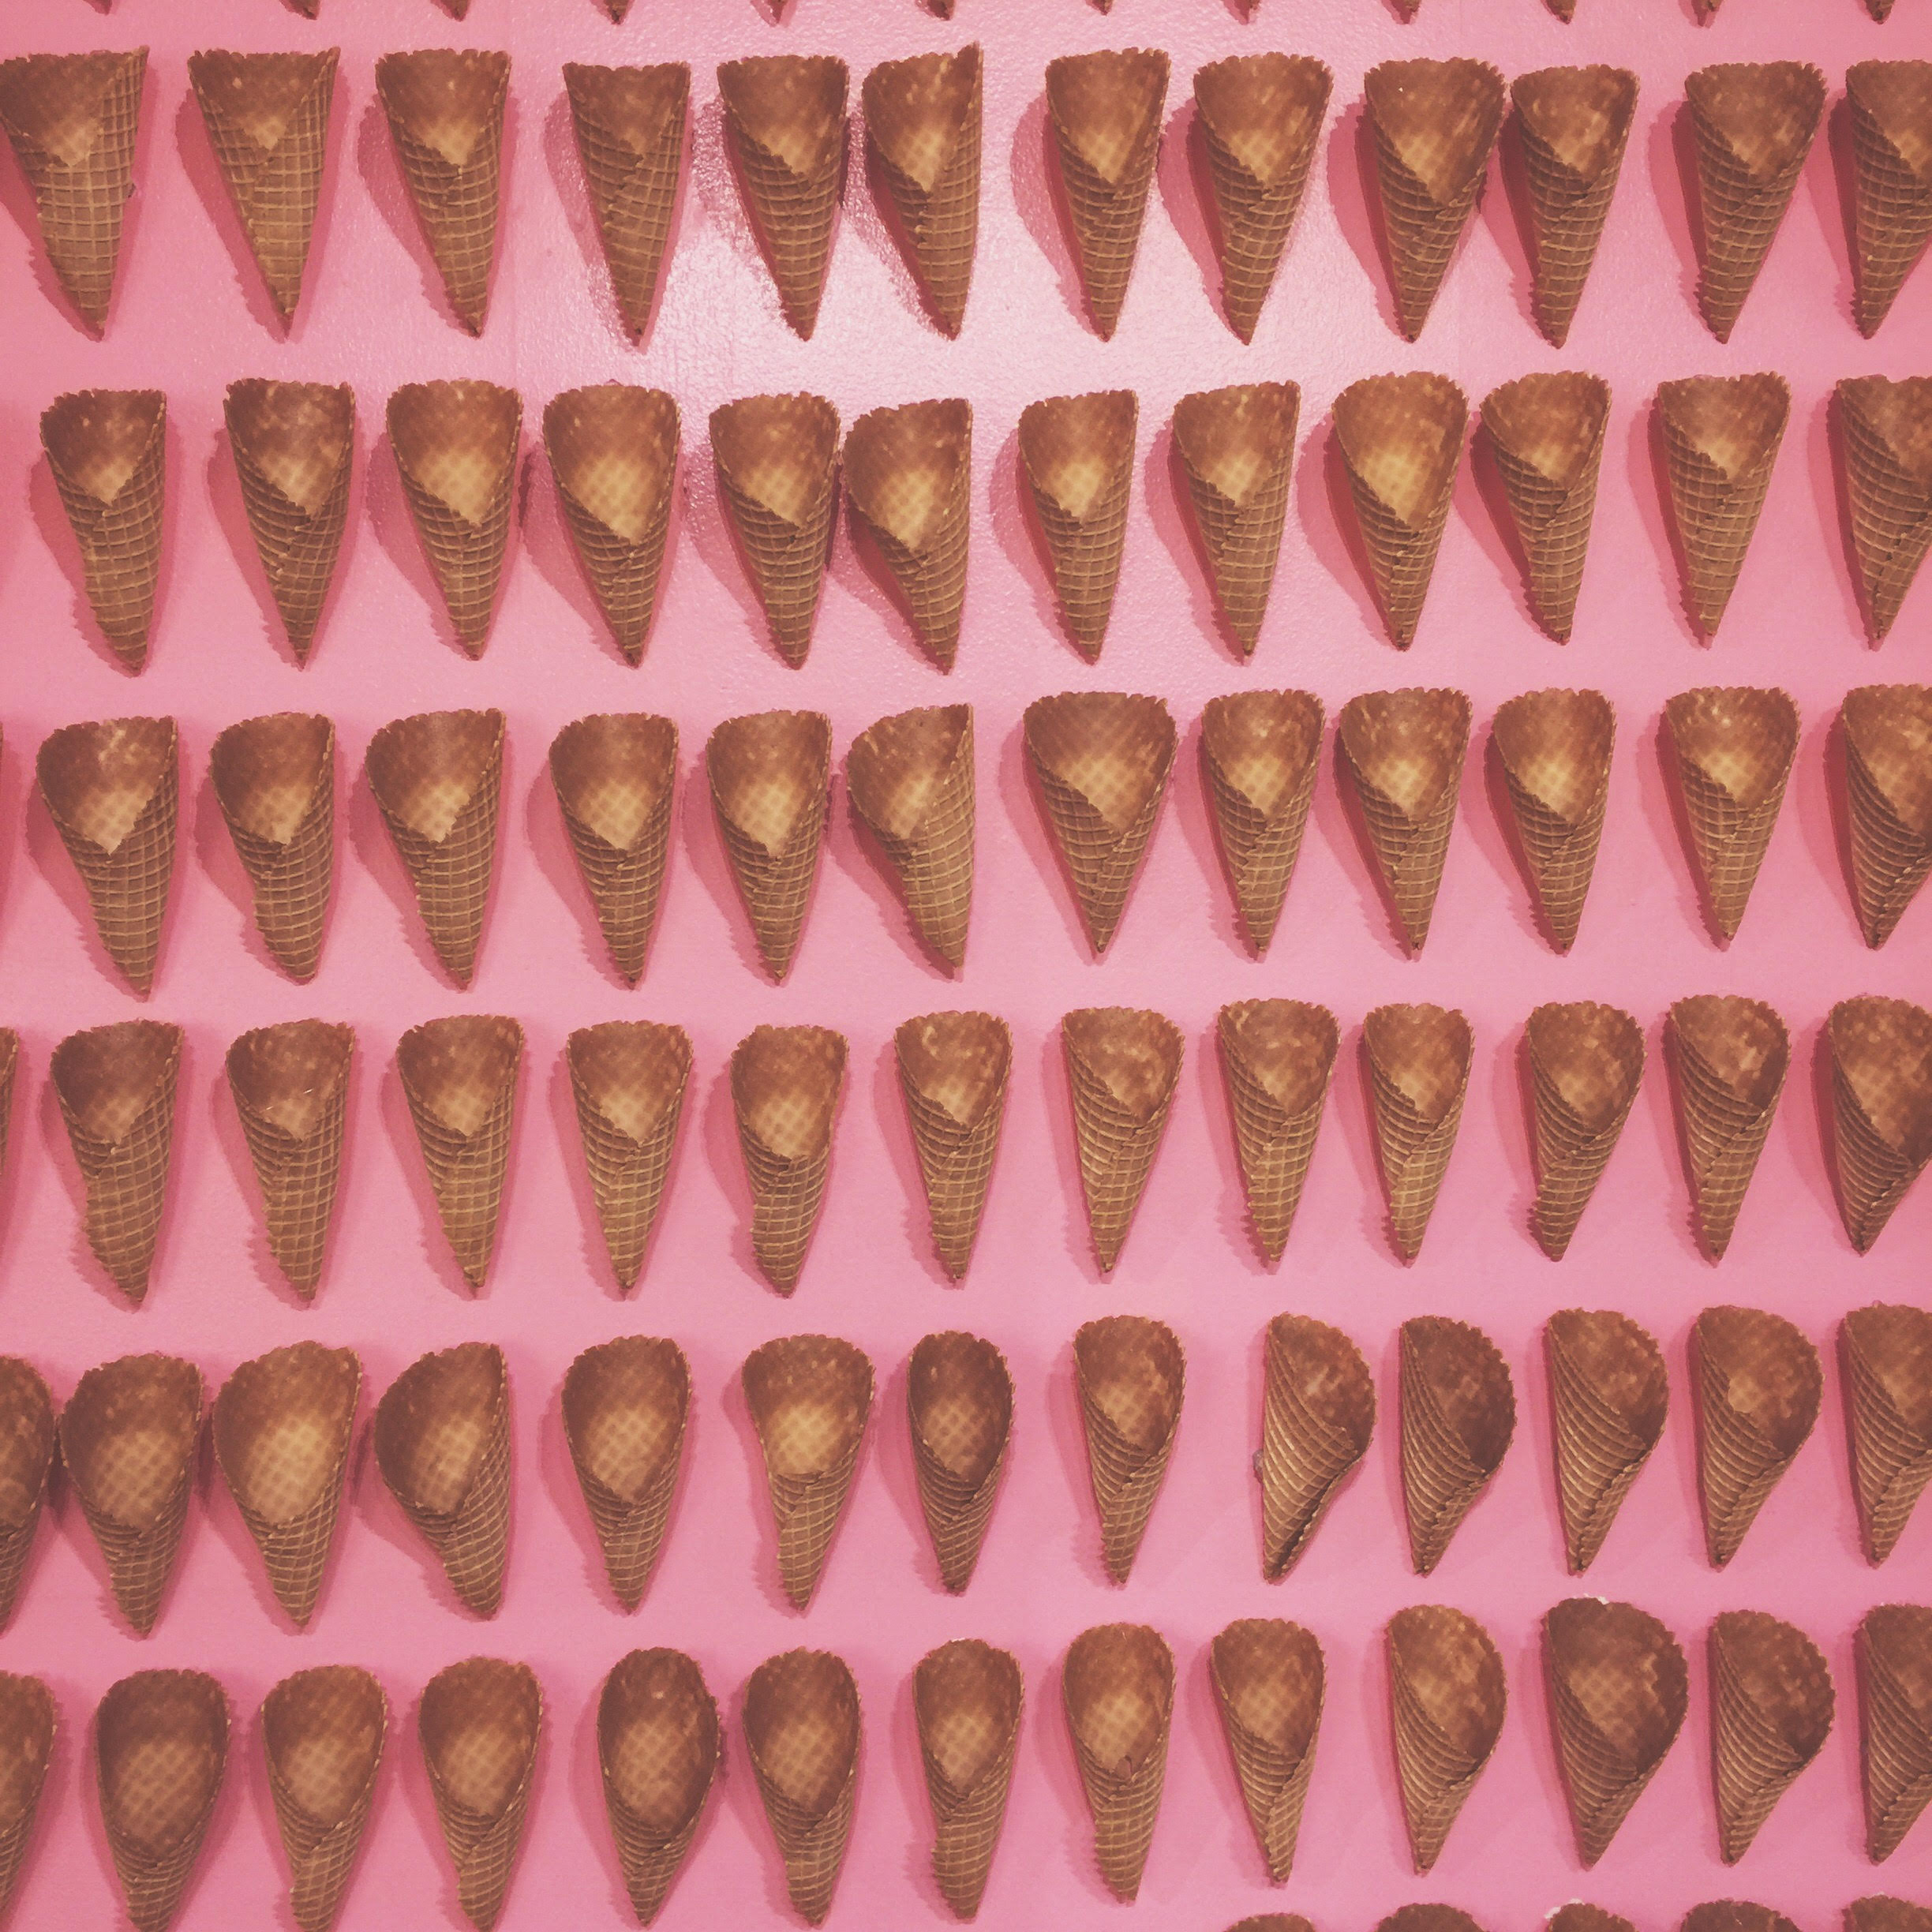 ice cream cones at the museum of ice cream